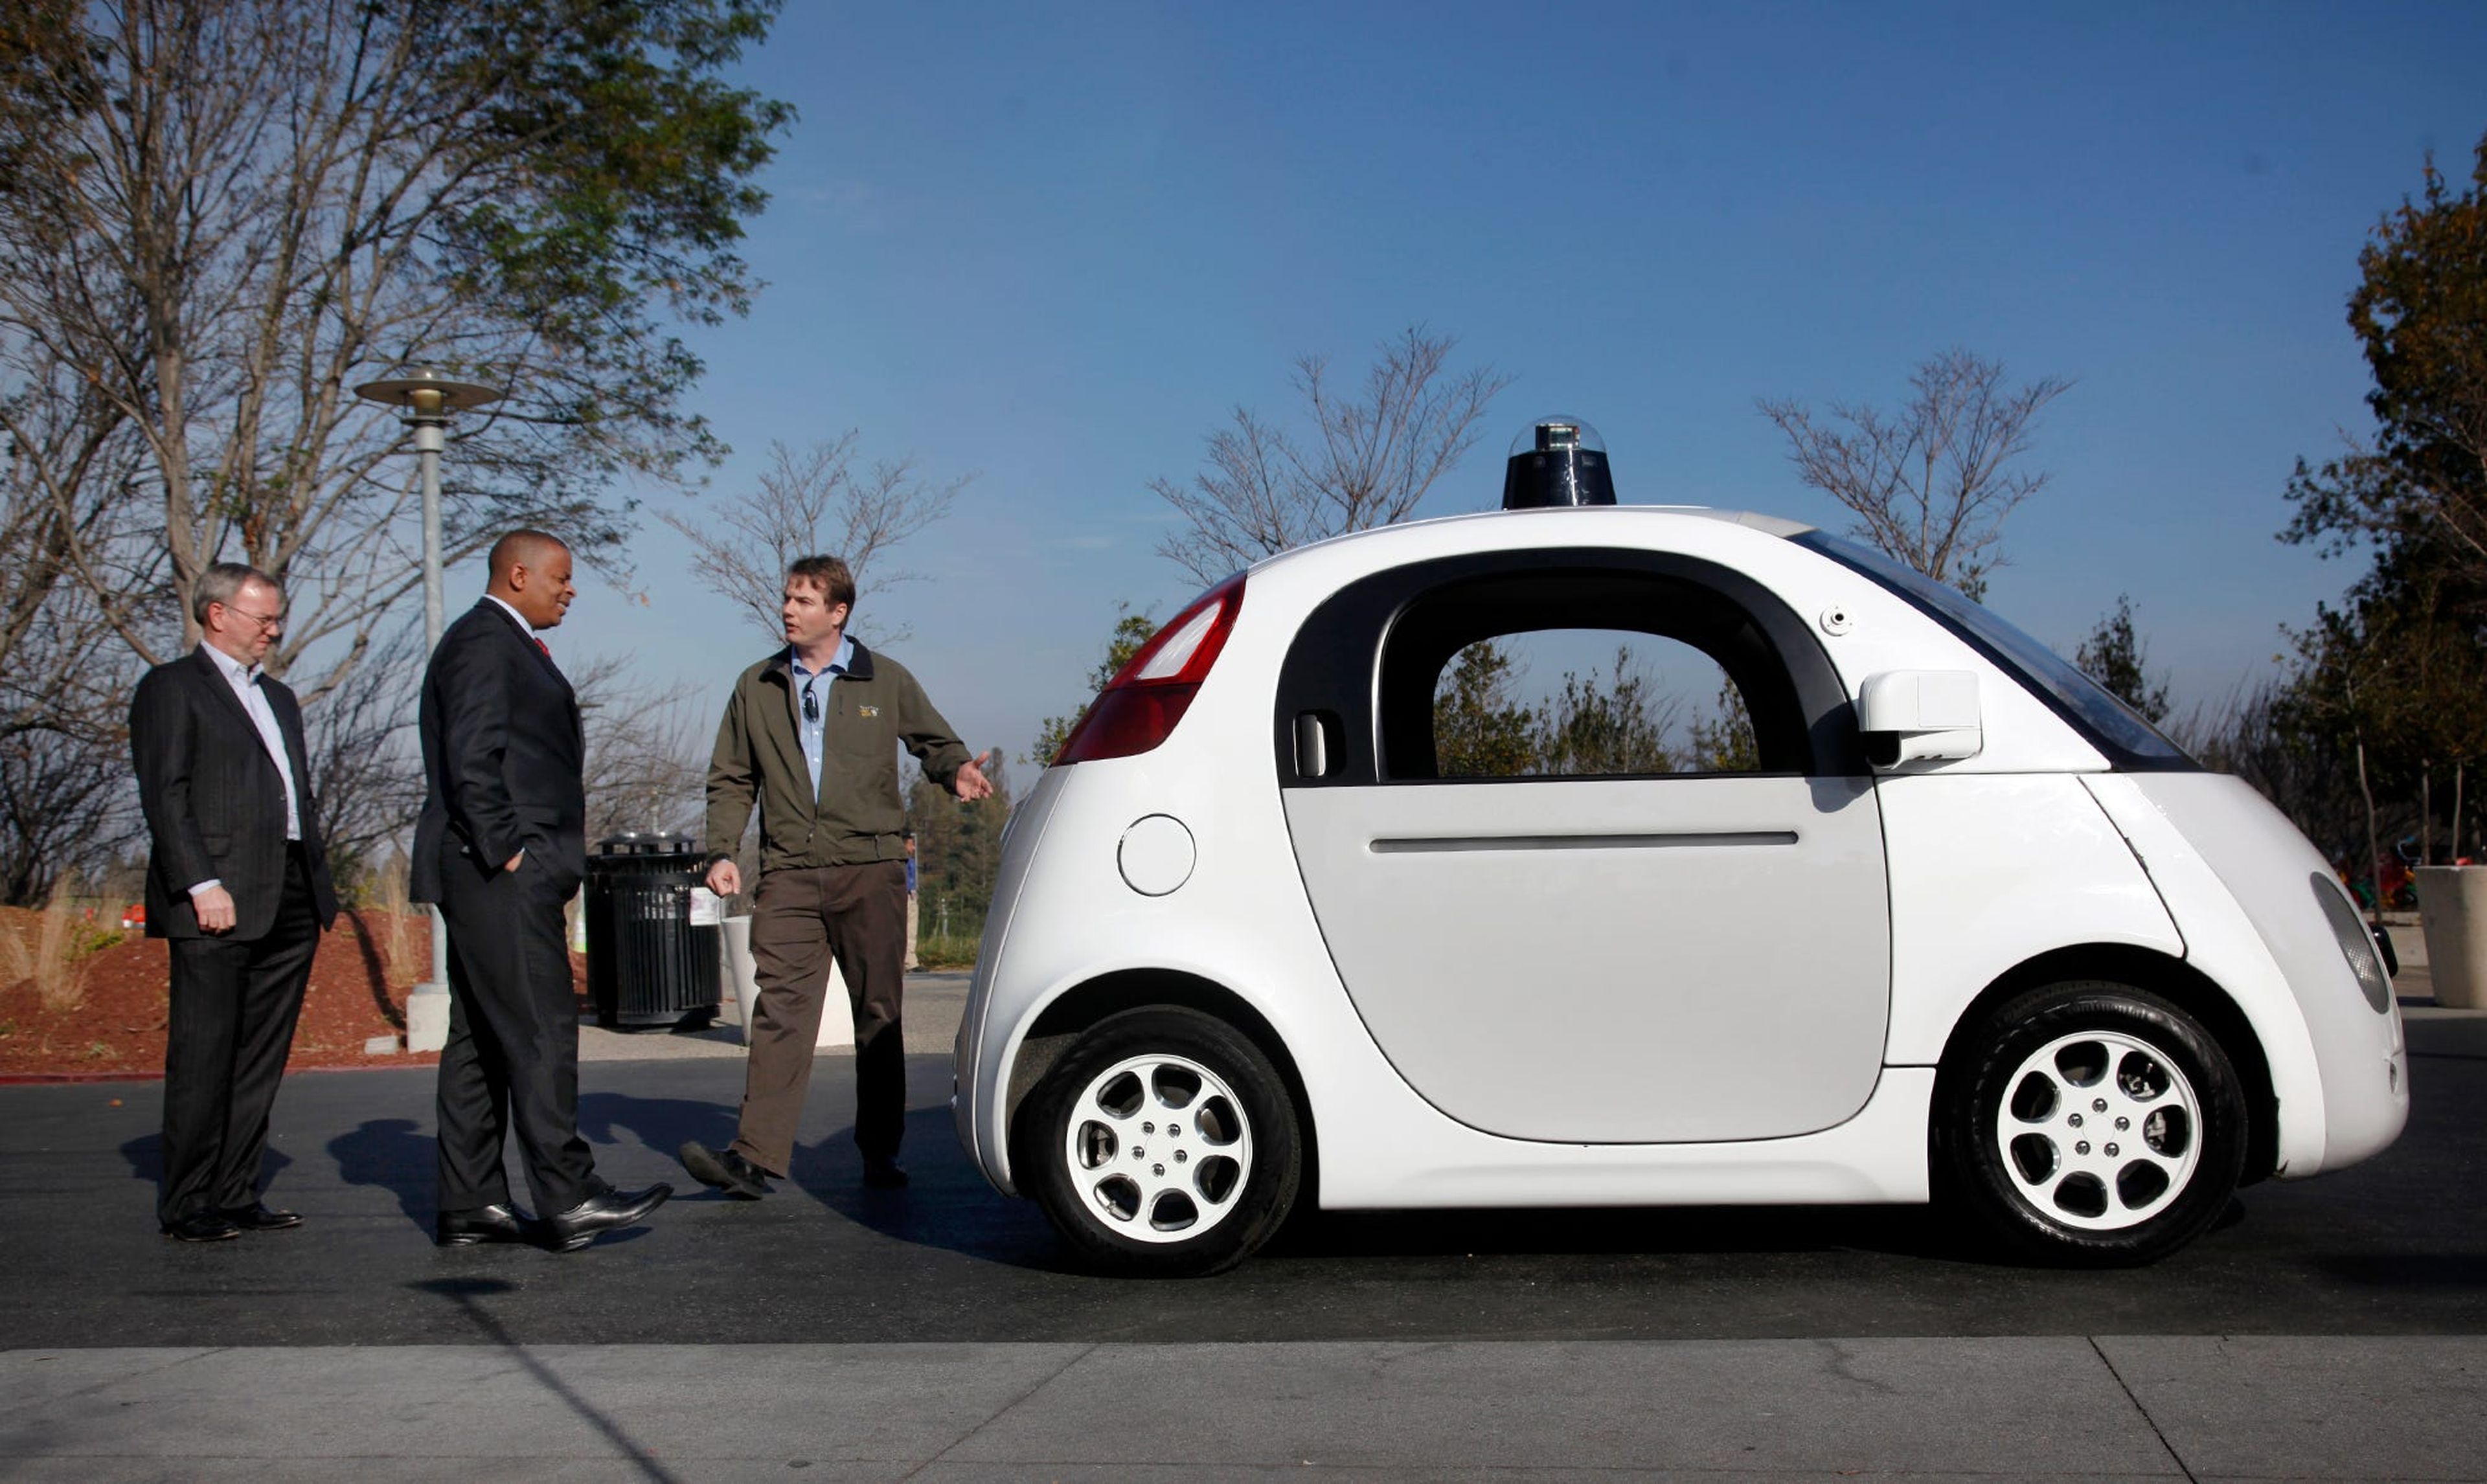 Urmson, a la derecha, muestra el modelo Firefly al presidente de Google, Eric Schmidt, y al secretario de transporte de EEUU Anthony Foxx.